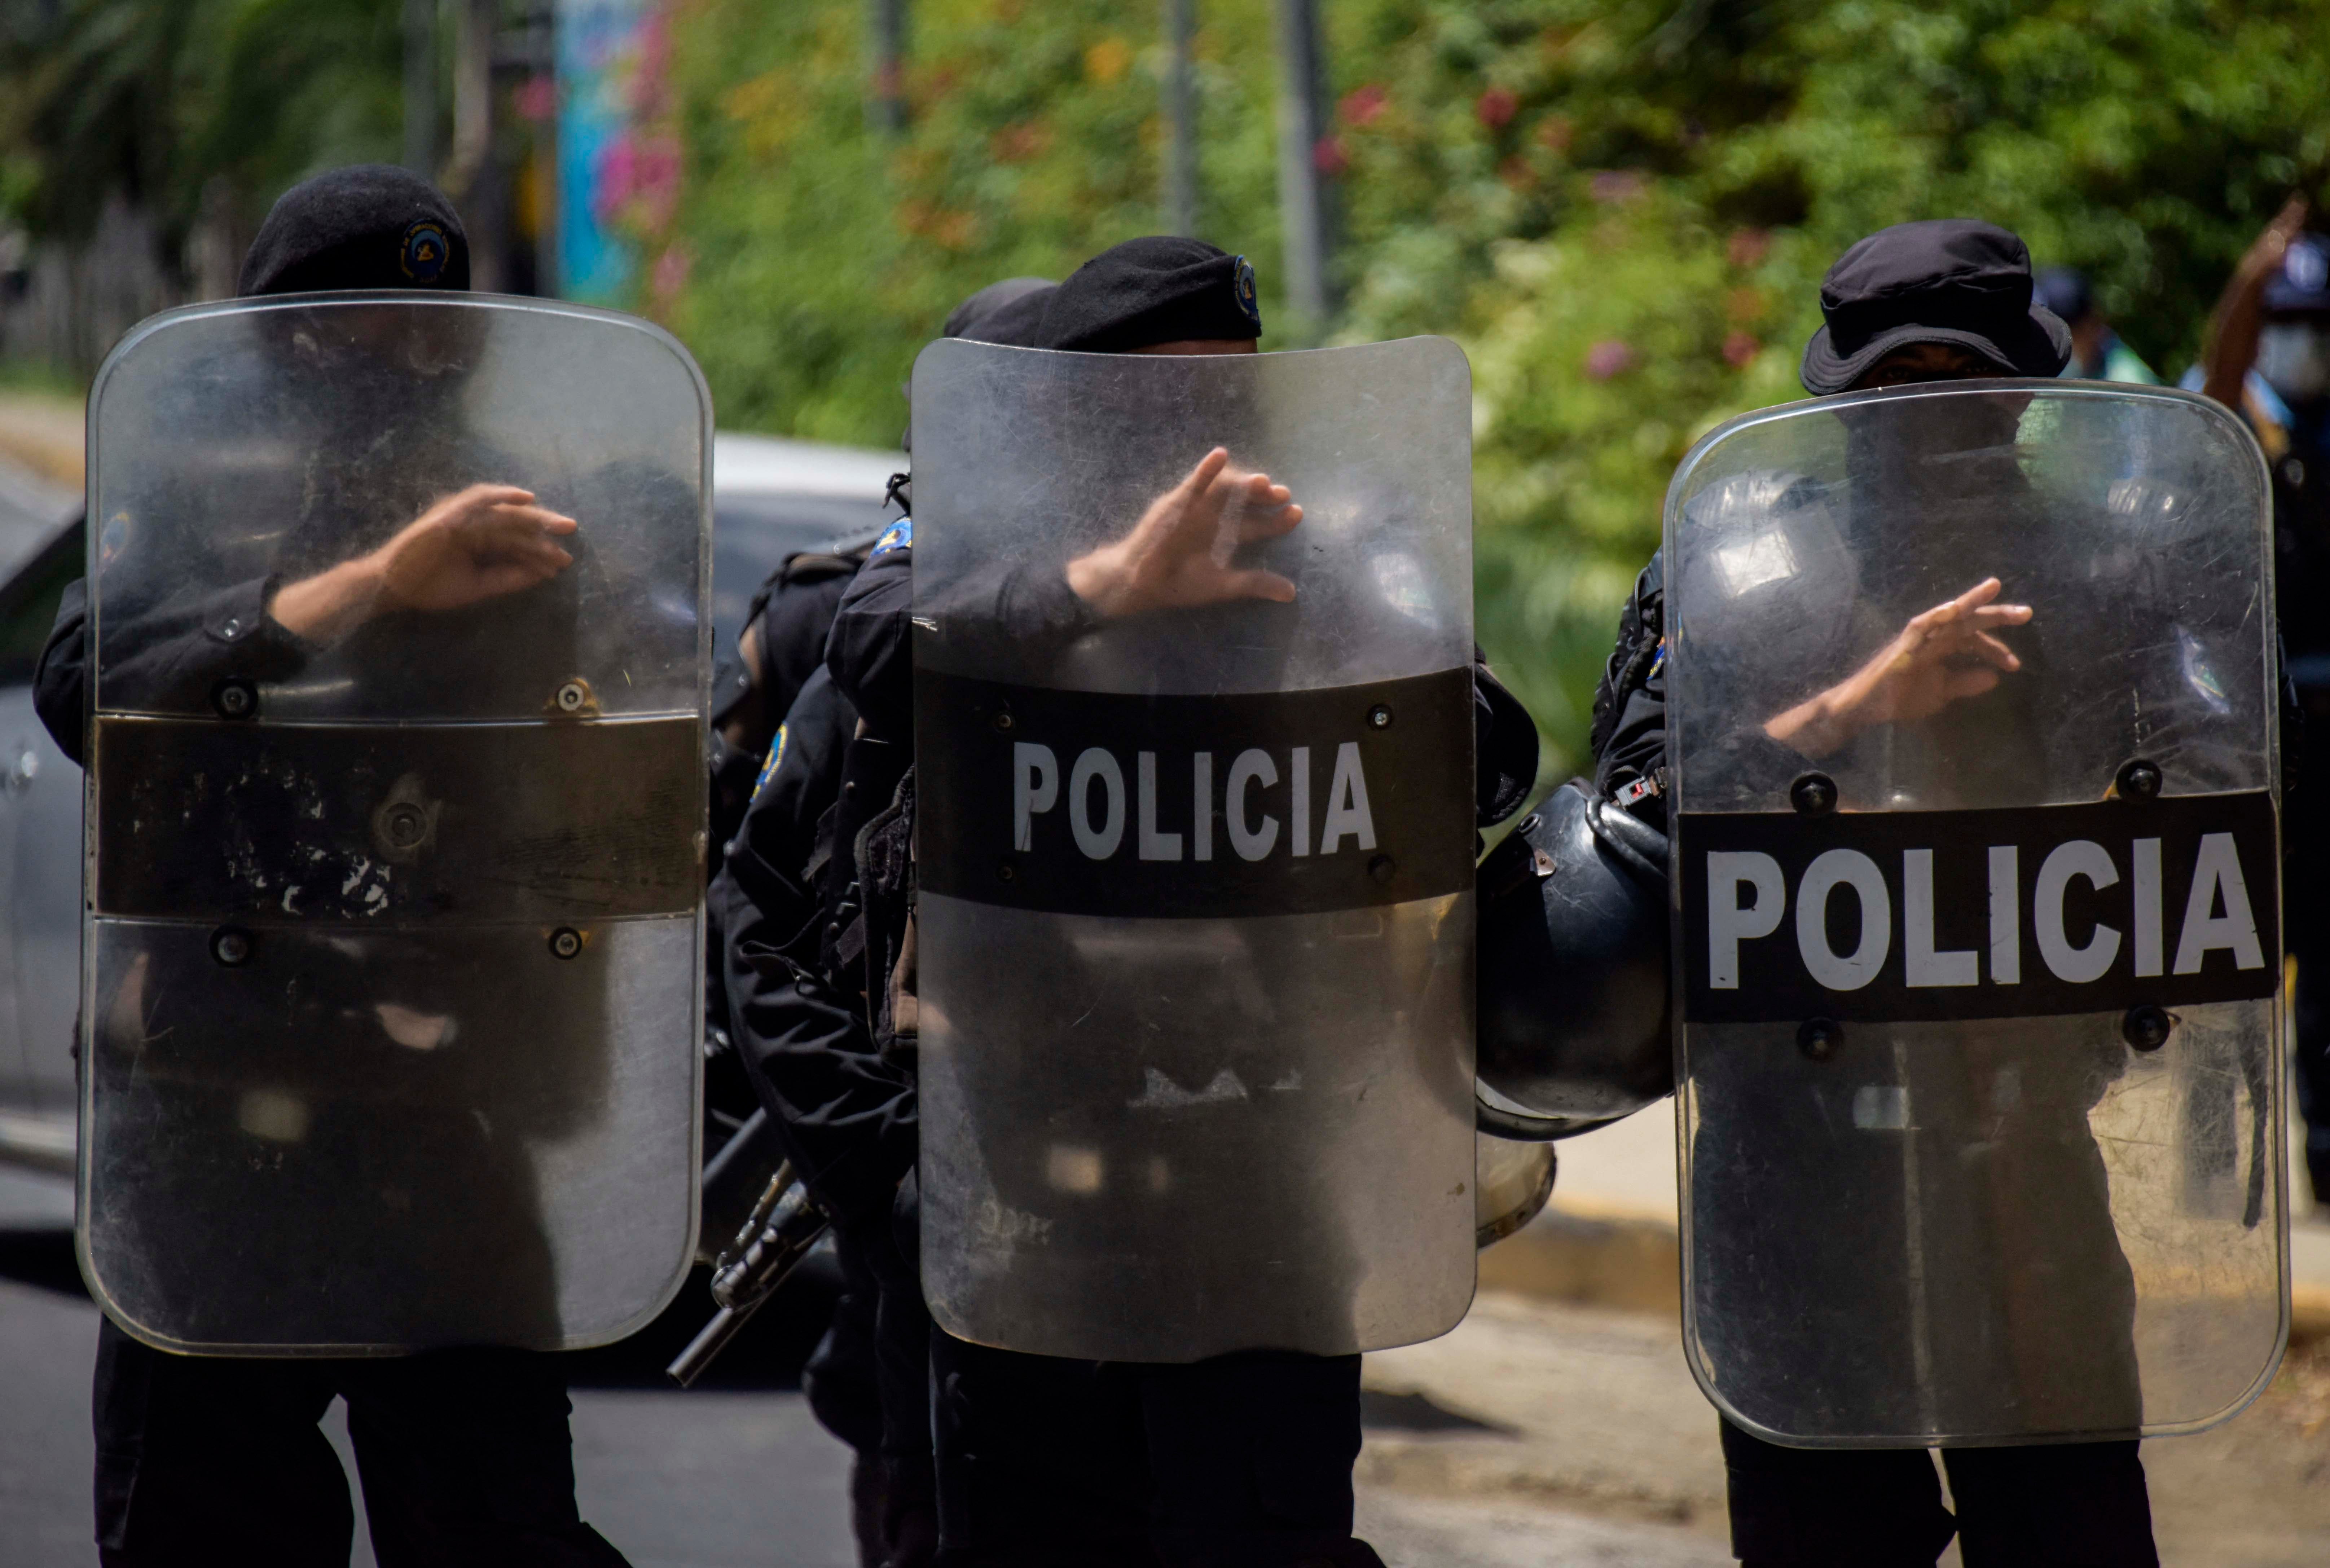 Ces policiers anti-émeute nicaraguayens étaient déployés le 2 juin 2021 à Managua devant le domicile de l’opposante Cristiana Chamorro, candidate à l’élection présidentielle prévue en novembre 2021. Ce jour-là, des policiers non munis de mandat ont perquisitionné son domicile. Elle a été assignée à résidence et fait l'objet d'une enquête sur la base d’accusations apparemment fondées sur motifs politiques.